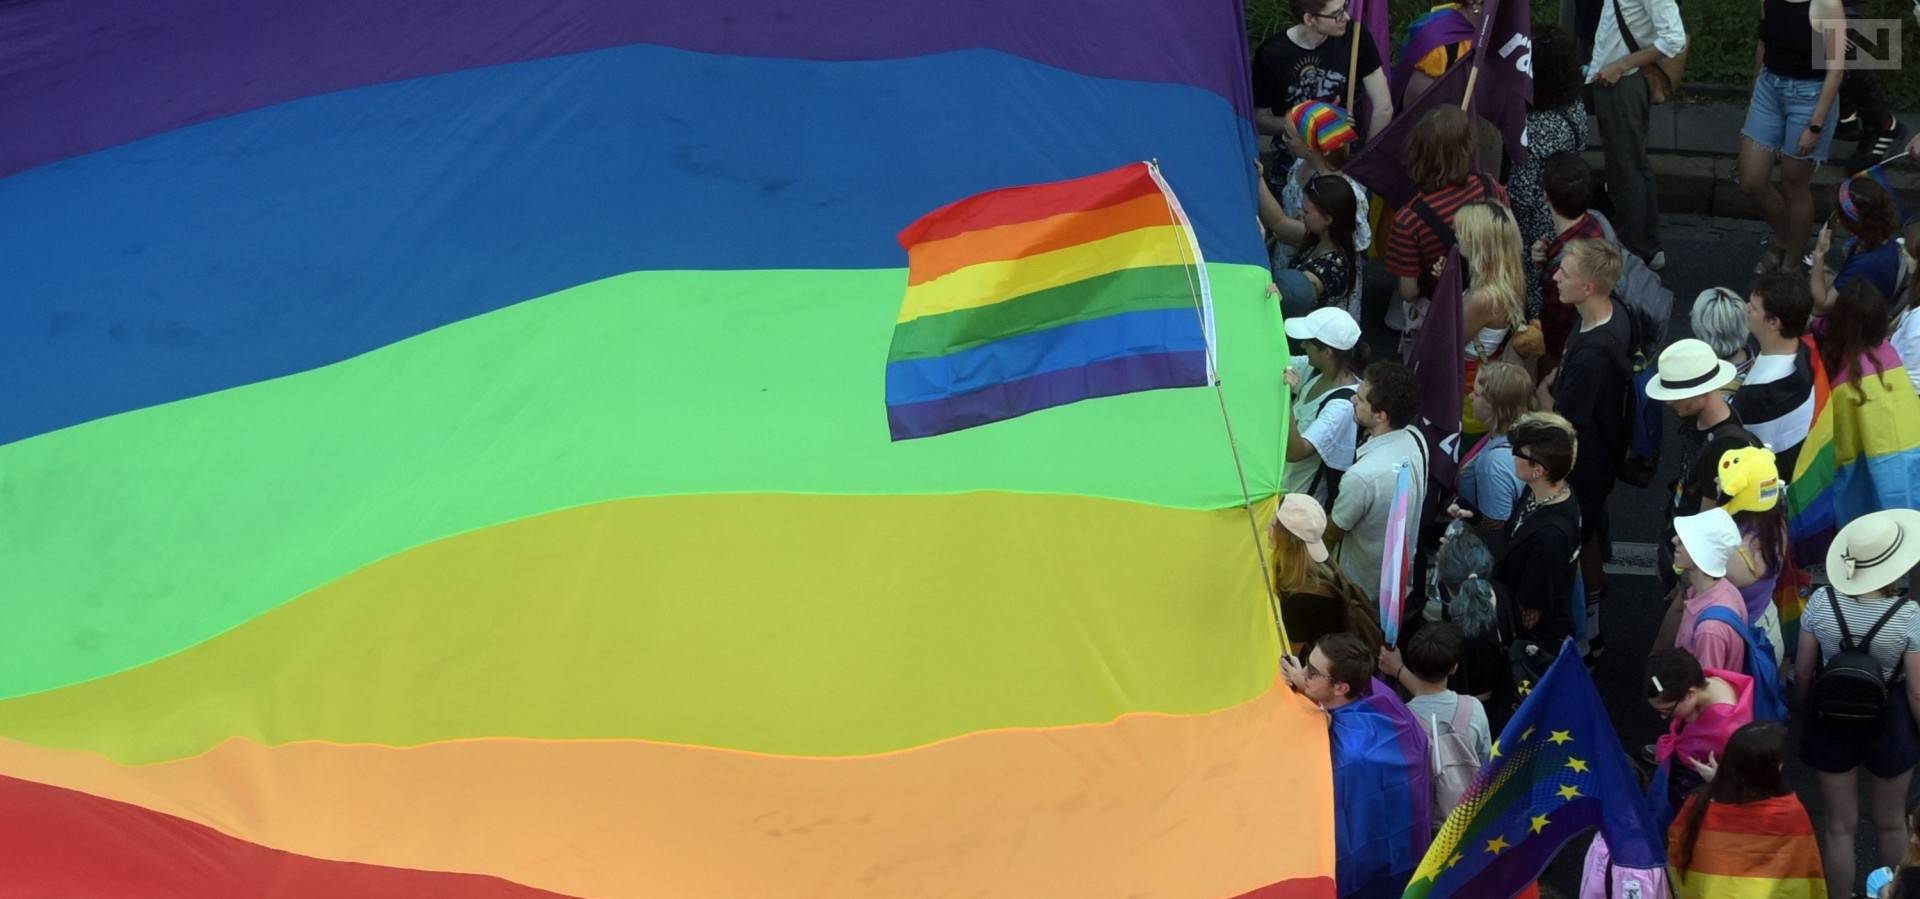 Radni Sejmiku z PiS za "nowelizacją uchwały" wymierzonej w osoby LGBT. Co chcą zmienić?